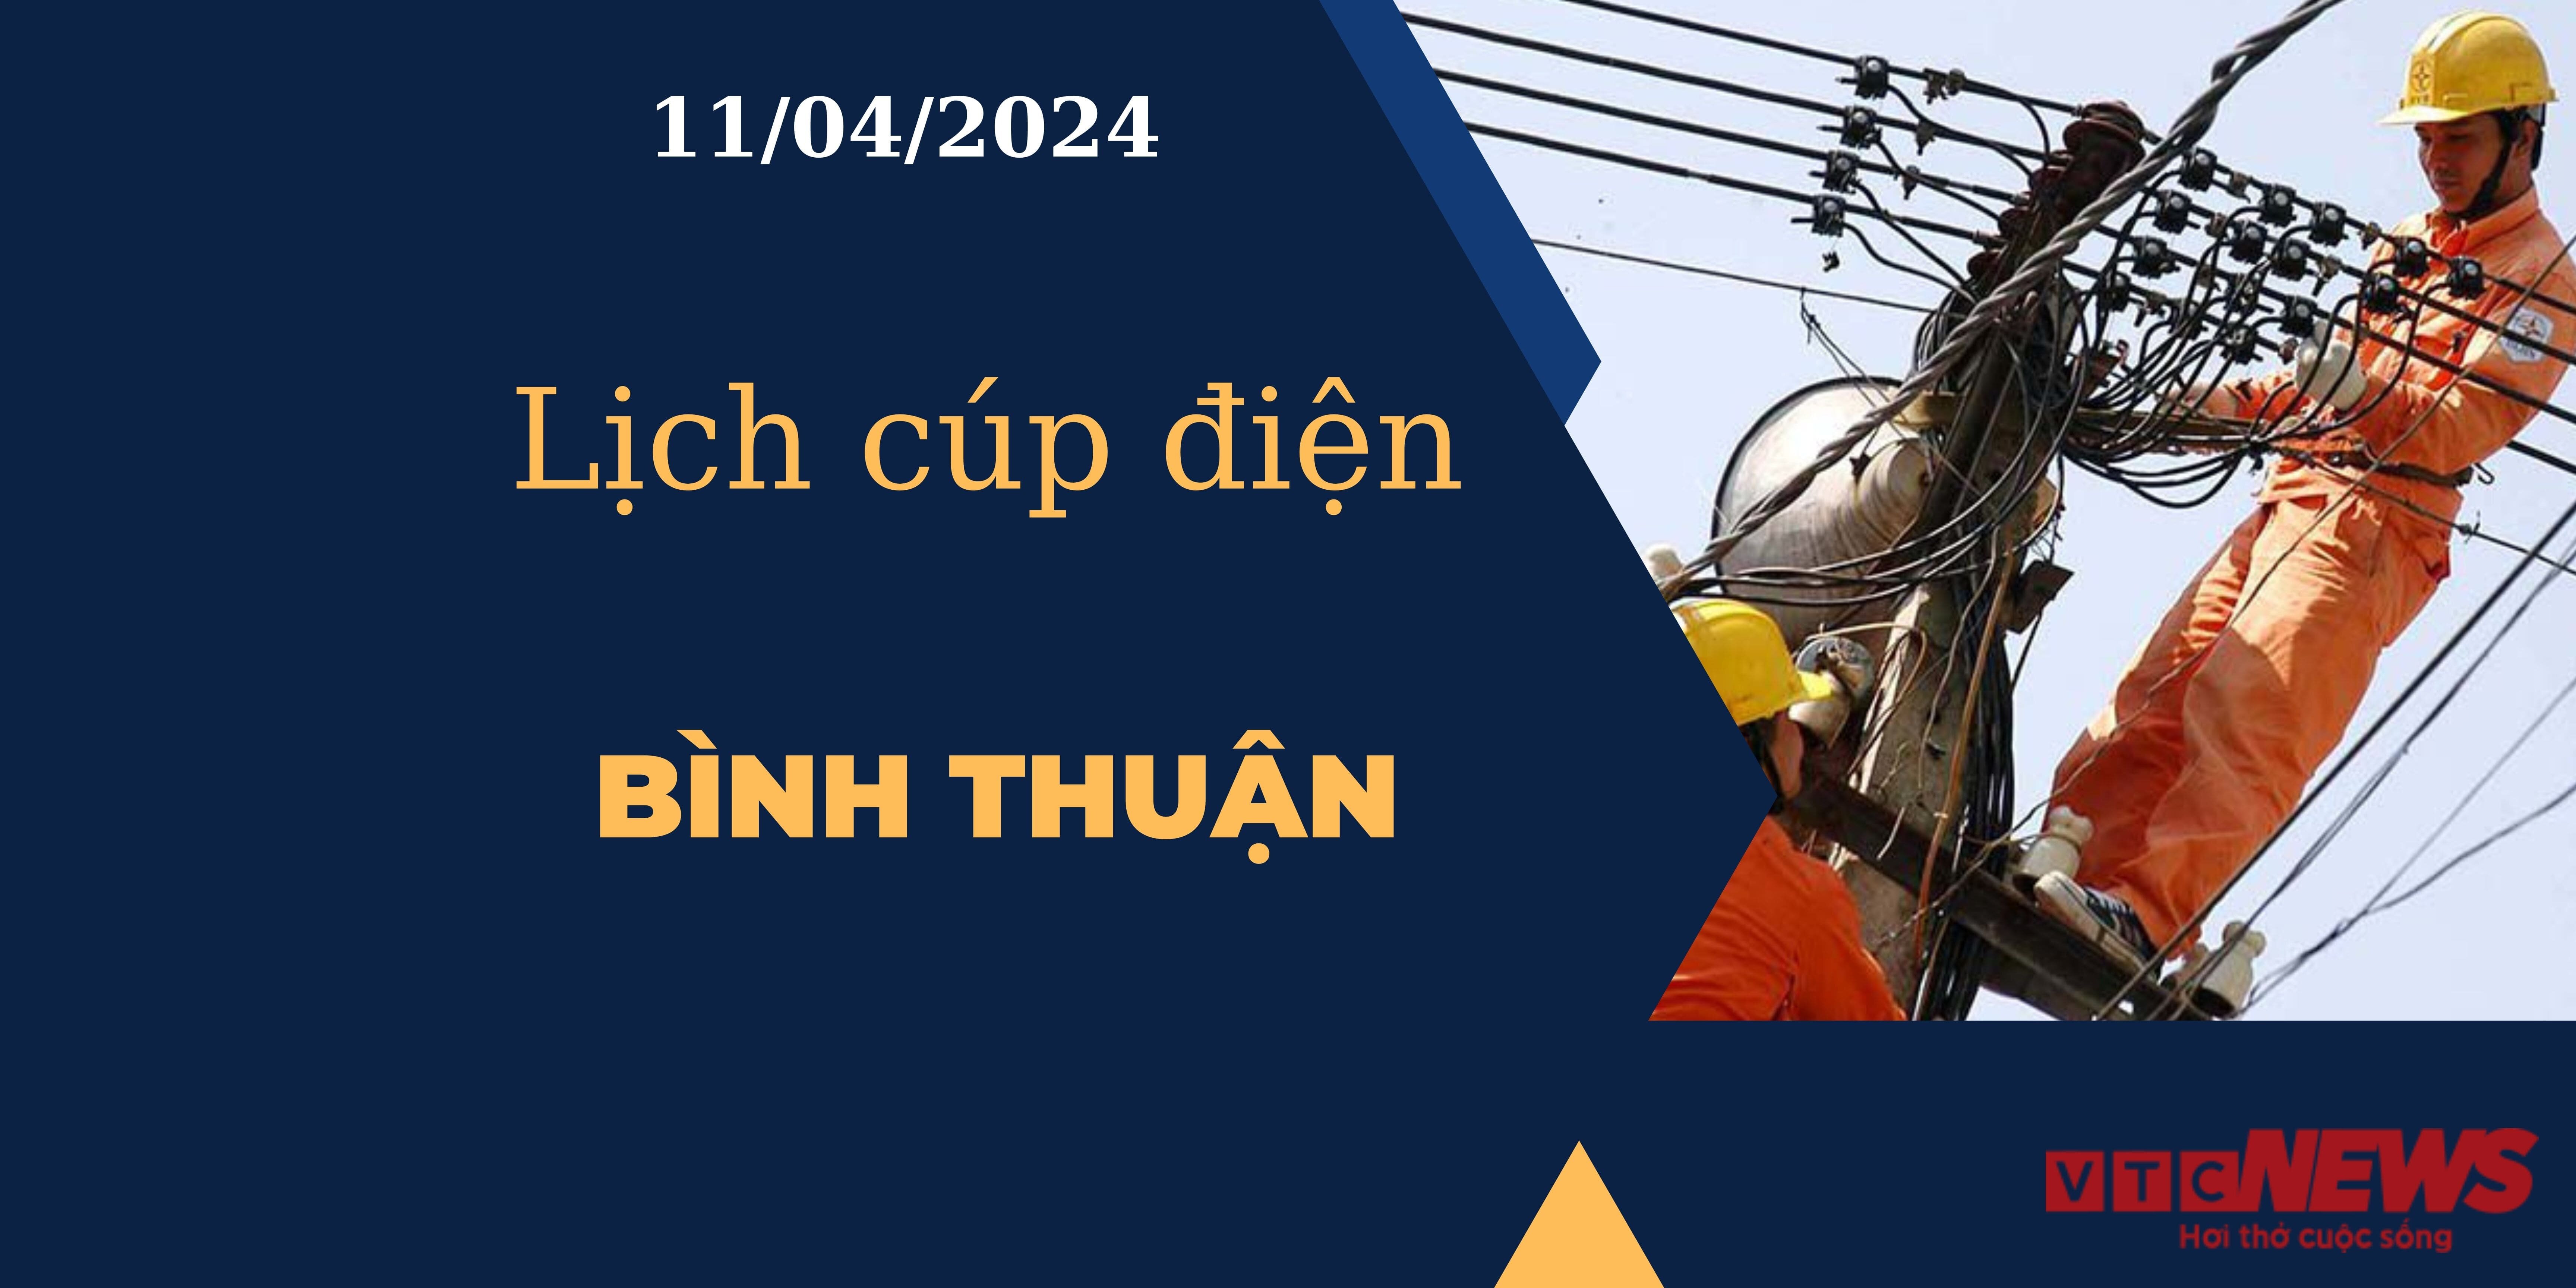 Lịch cúp điện hôm nay tại Bình Thuận ngày 11/04/2024